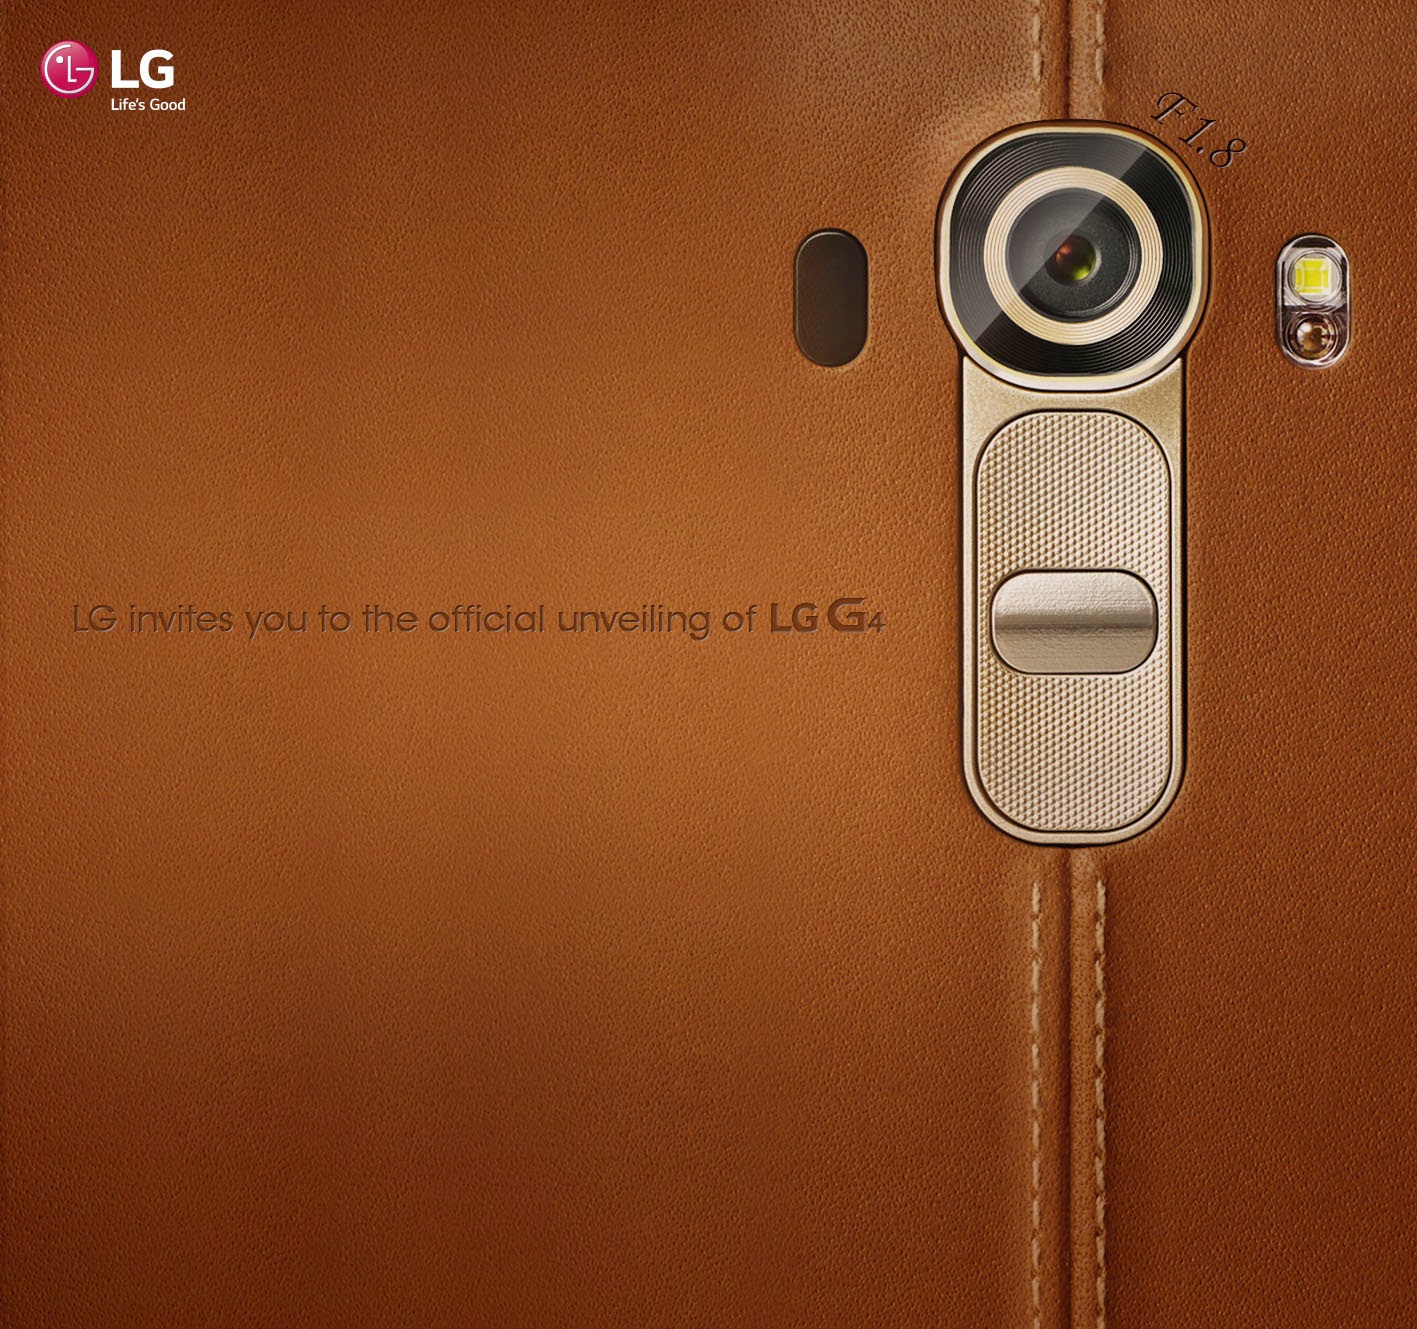 LG G4 Teaser